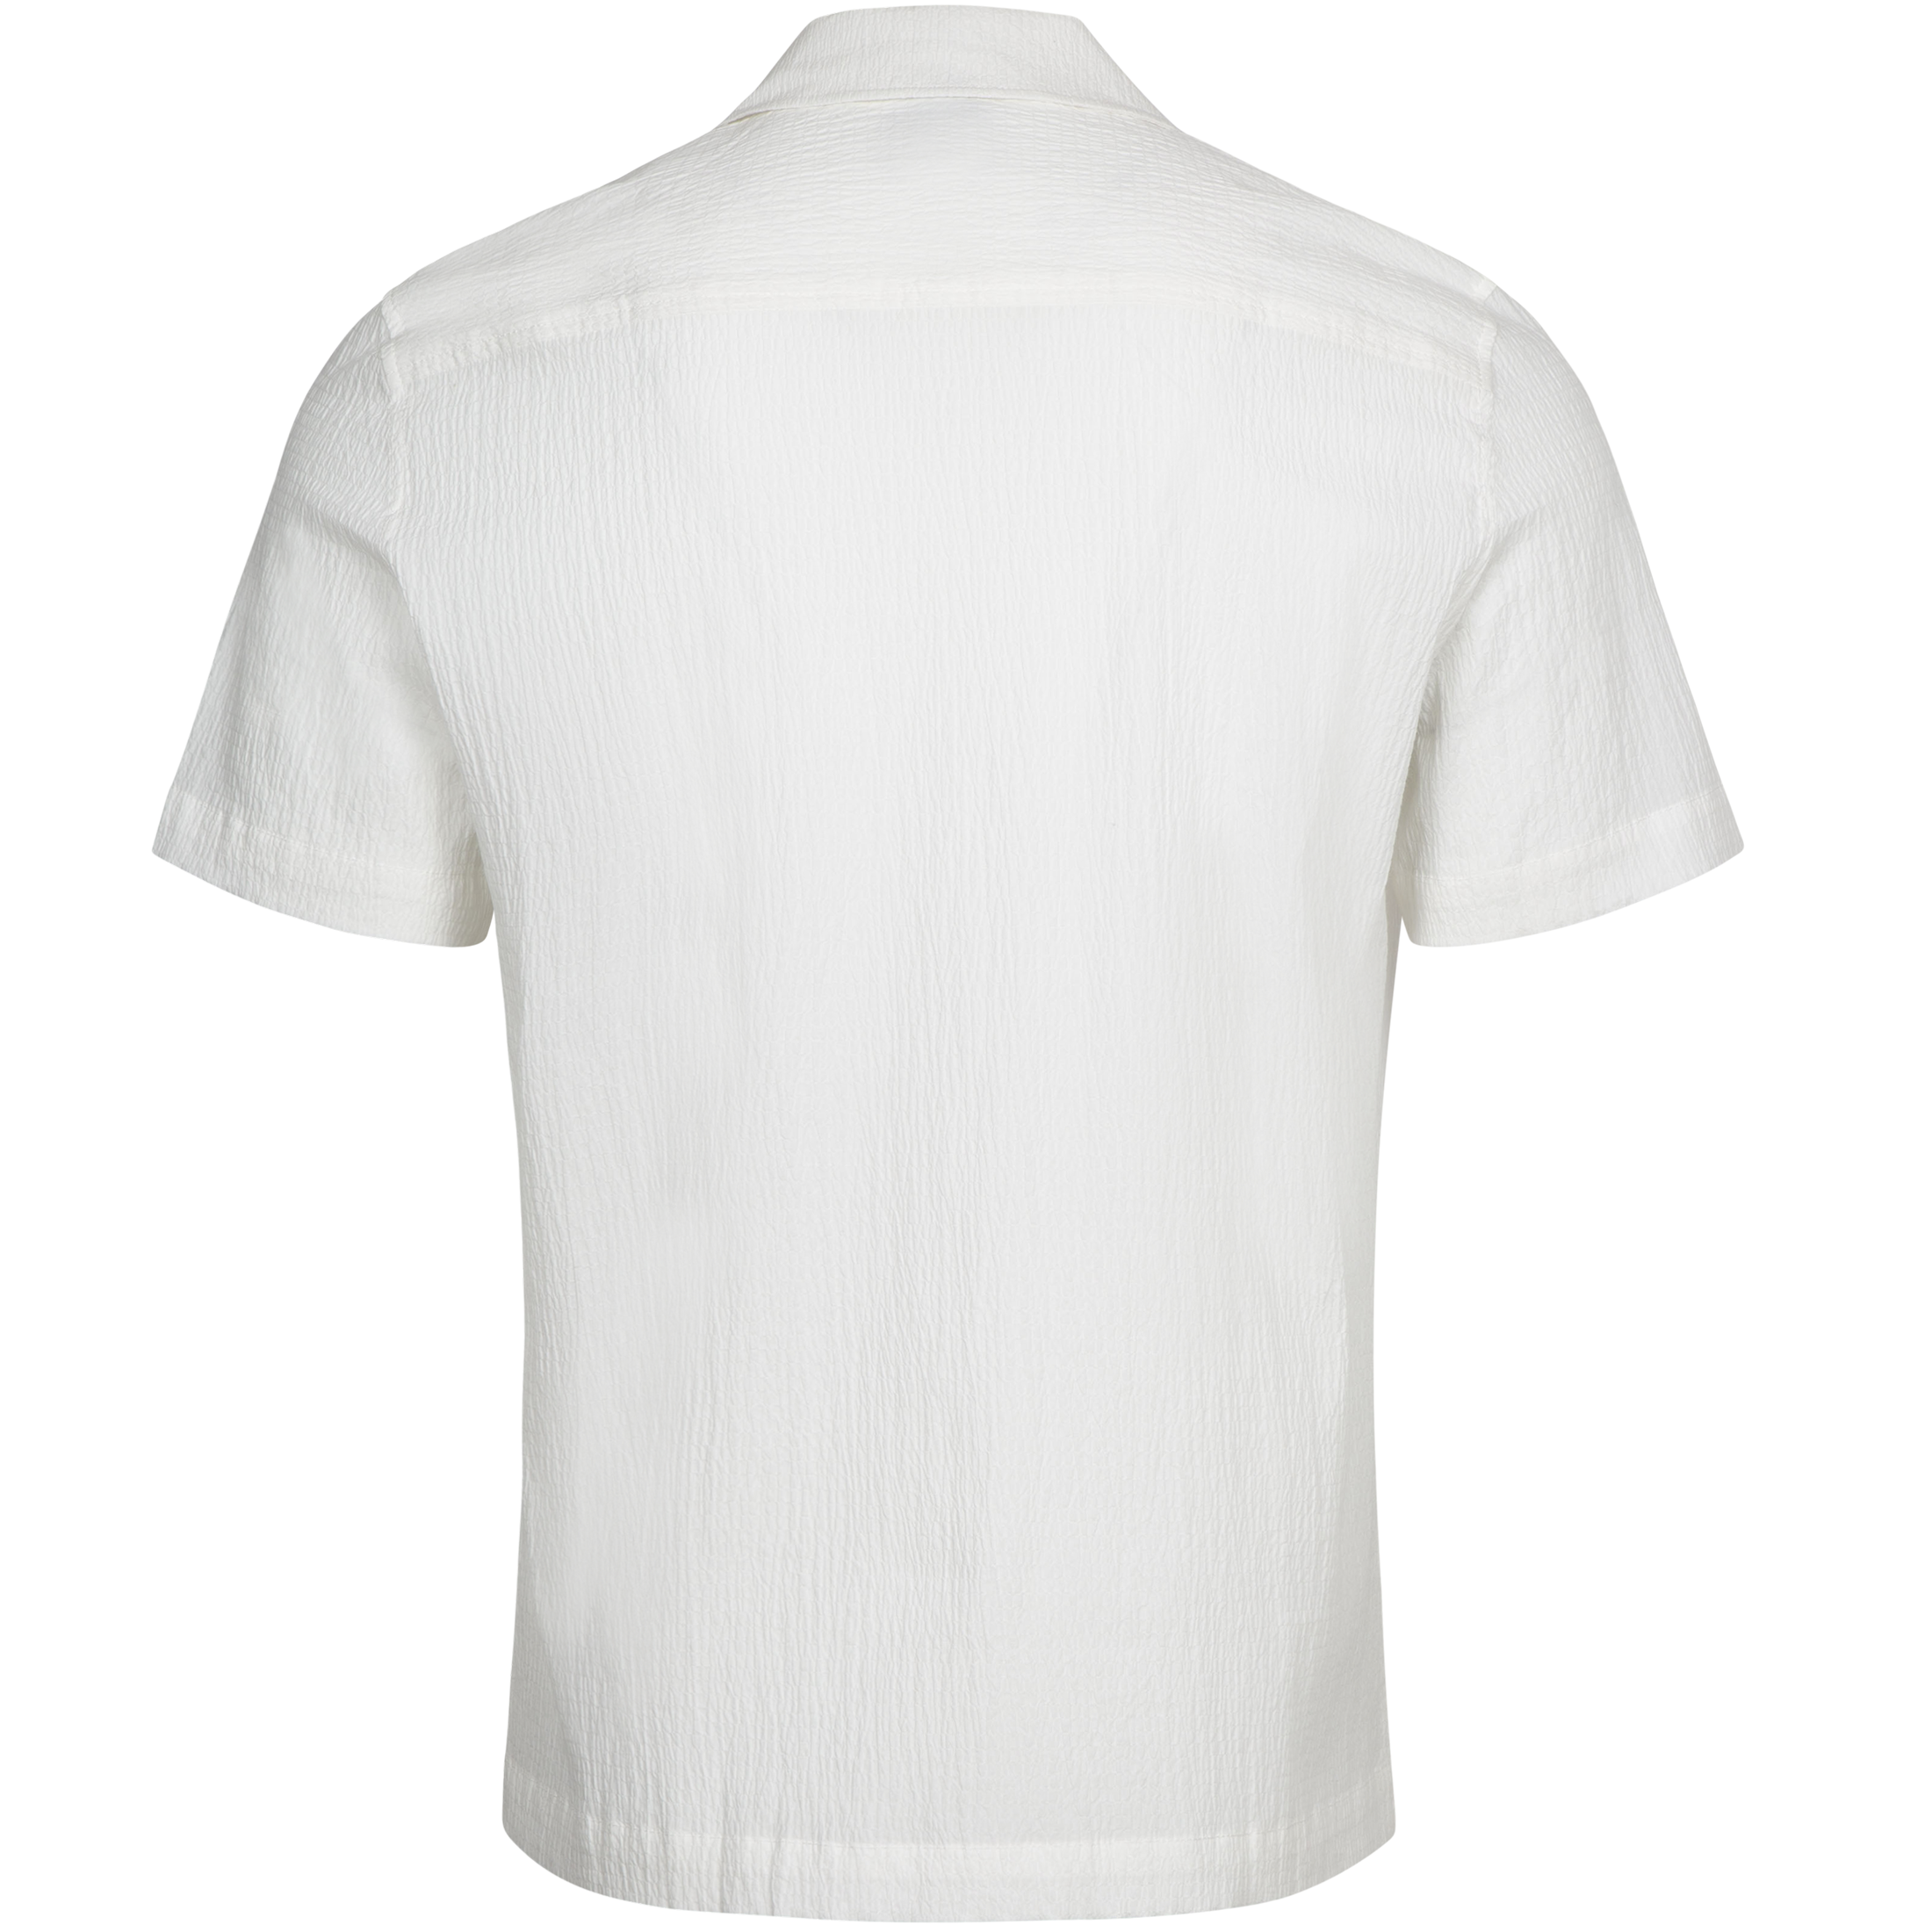 Capri Shirt - White